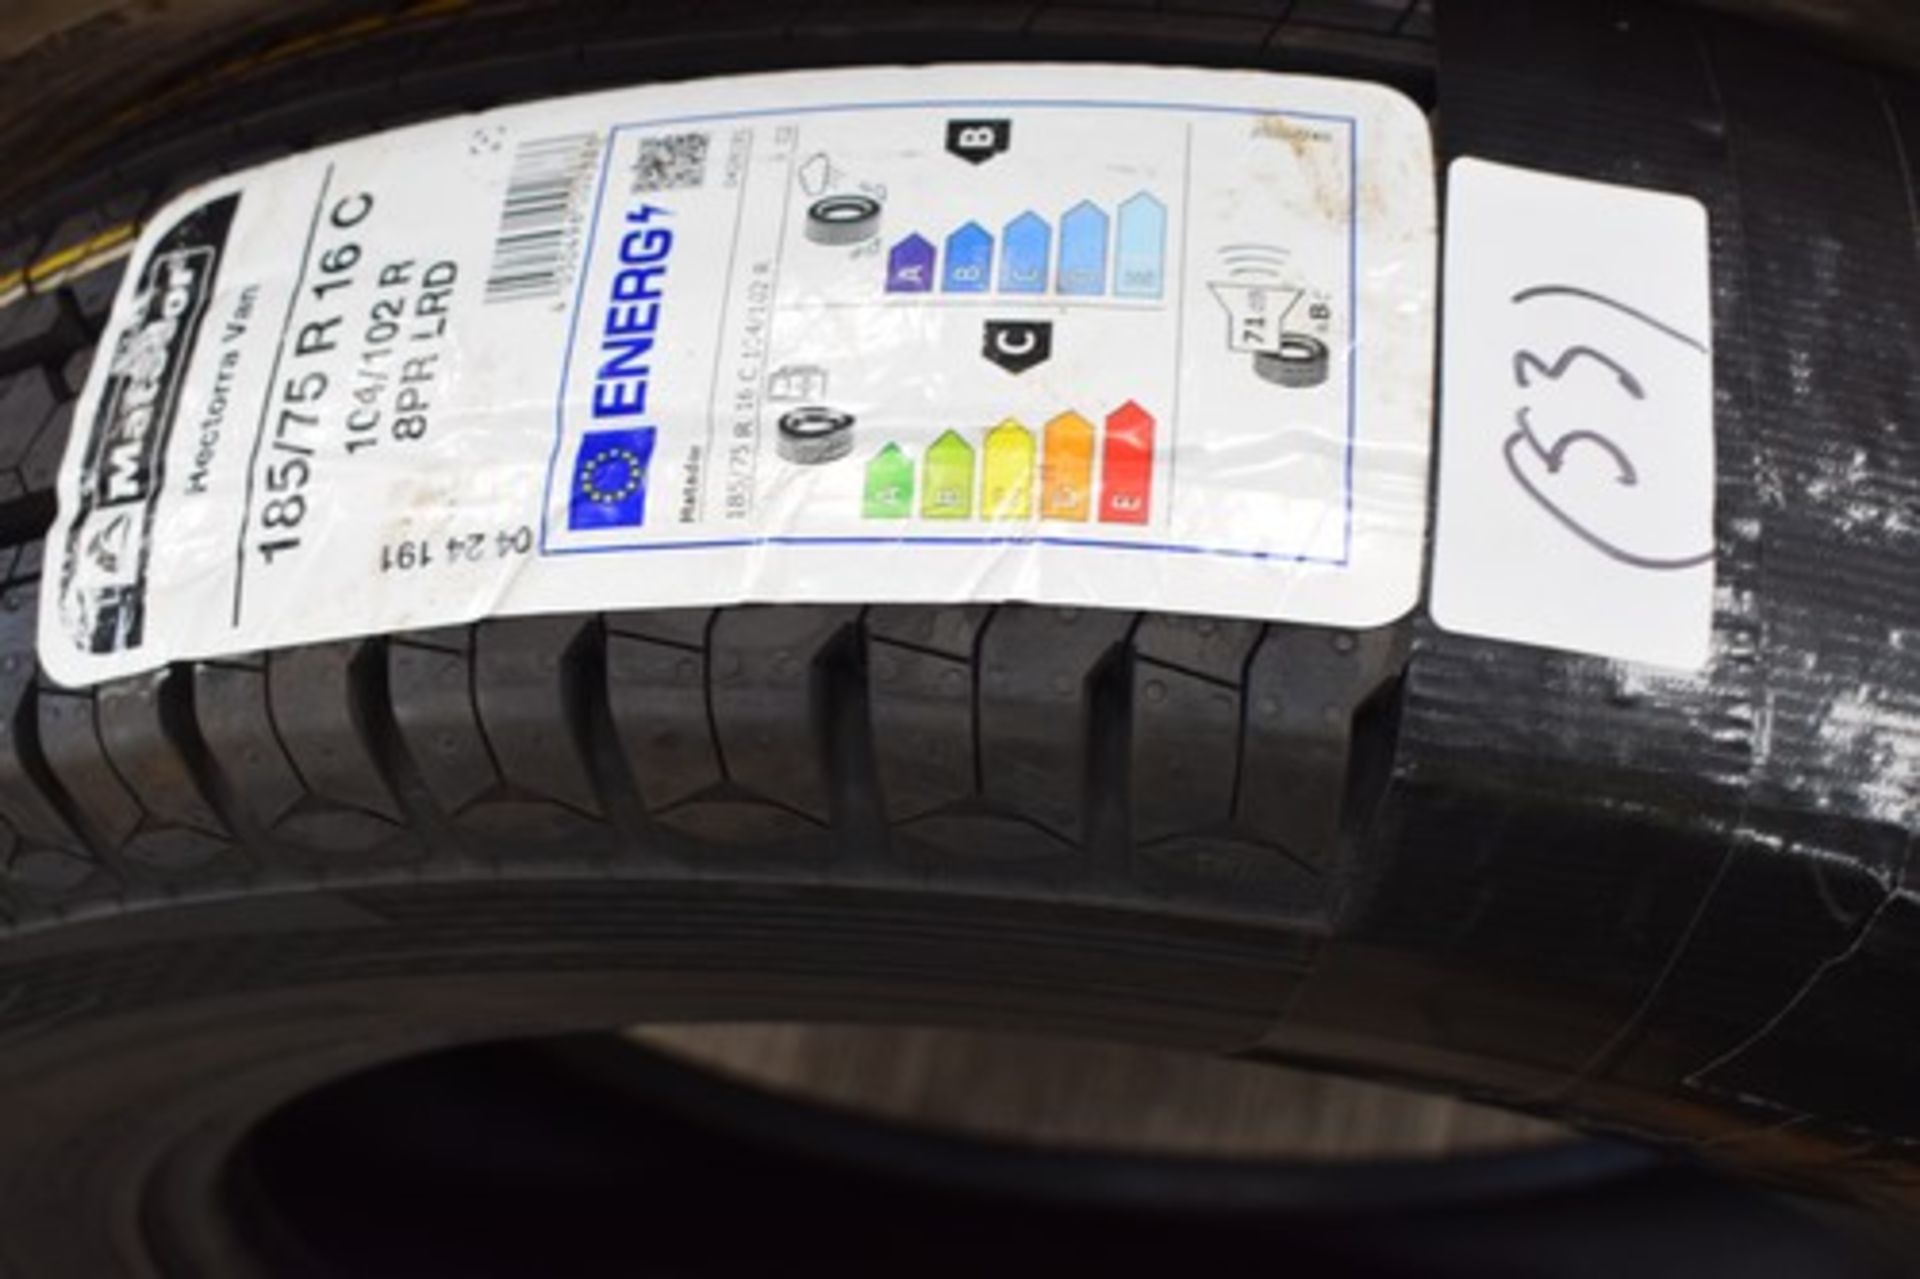 1 x Matador Hectorra van tyre, size 185/75 R16 C - new with label (C4)(53)